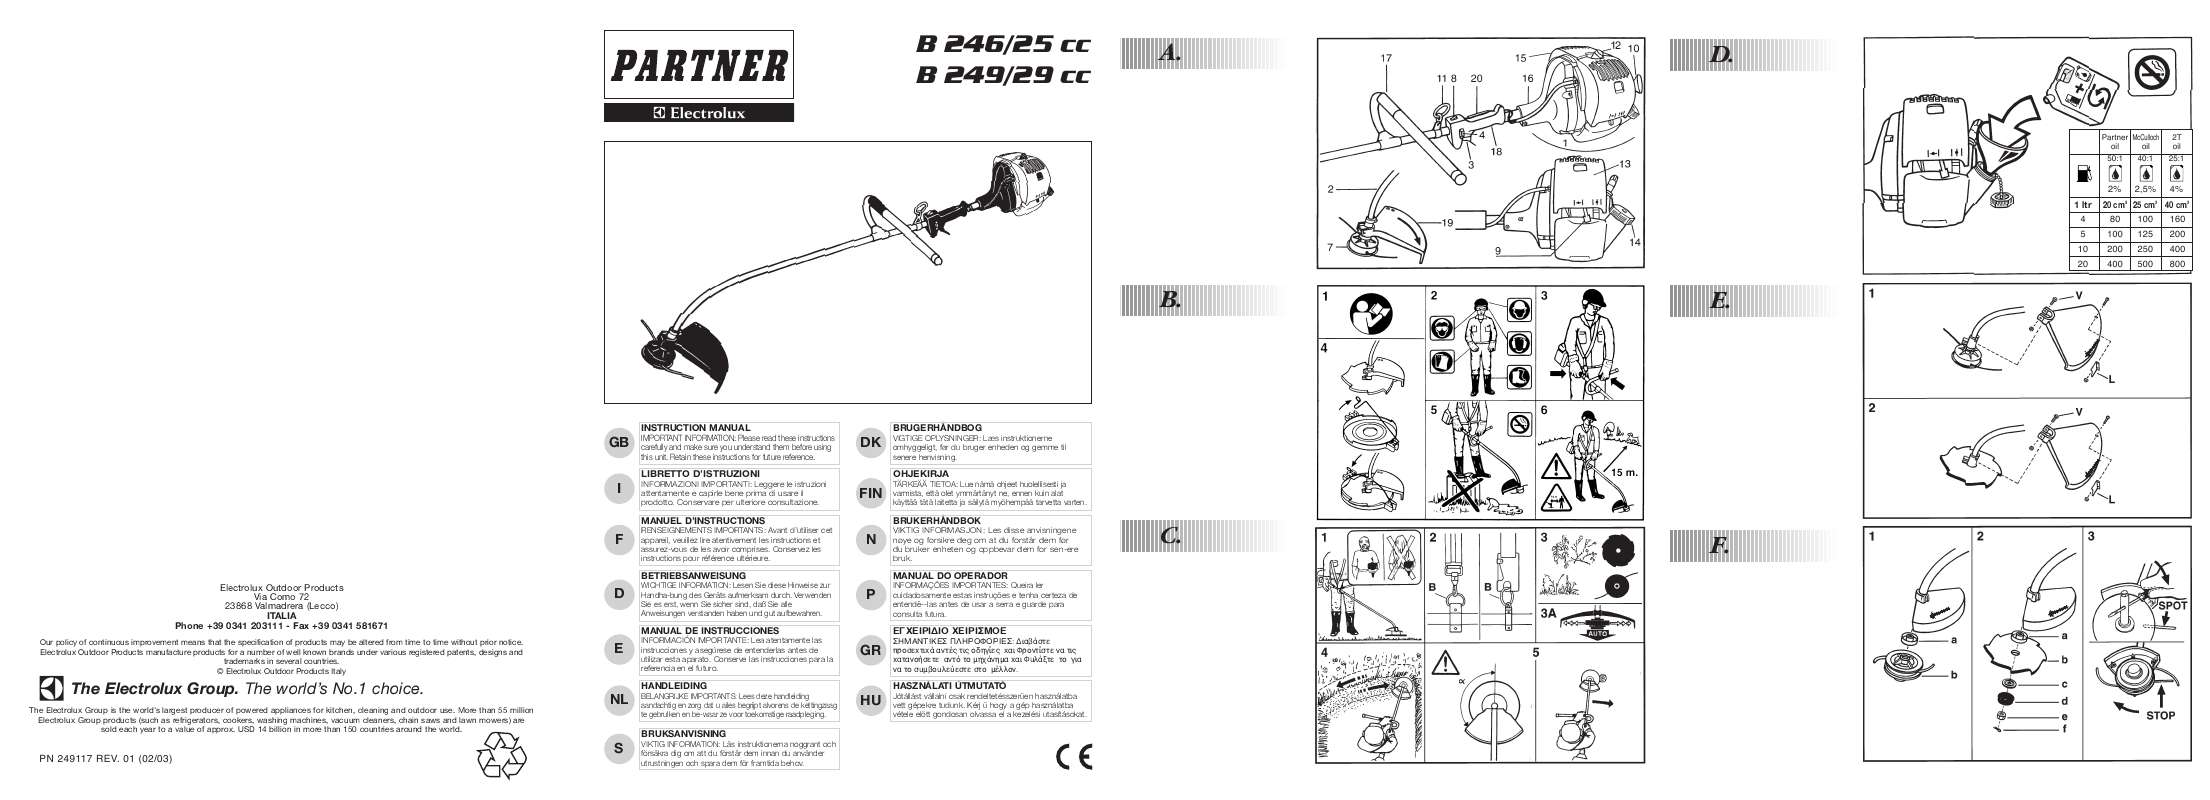 Guide utilisation  AEG-ELECTROLUX PARTNER B 246 25CC  de la marque AEG-ELECTROLUX